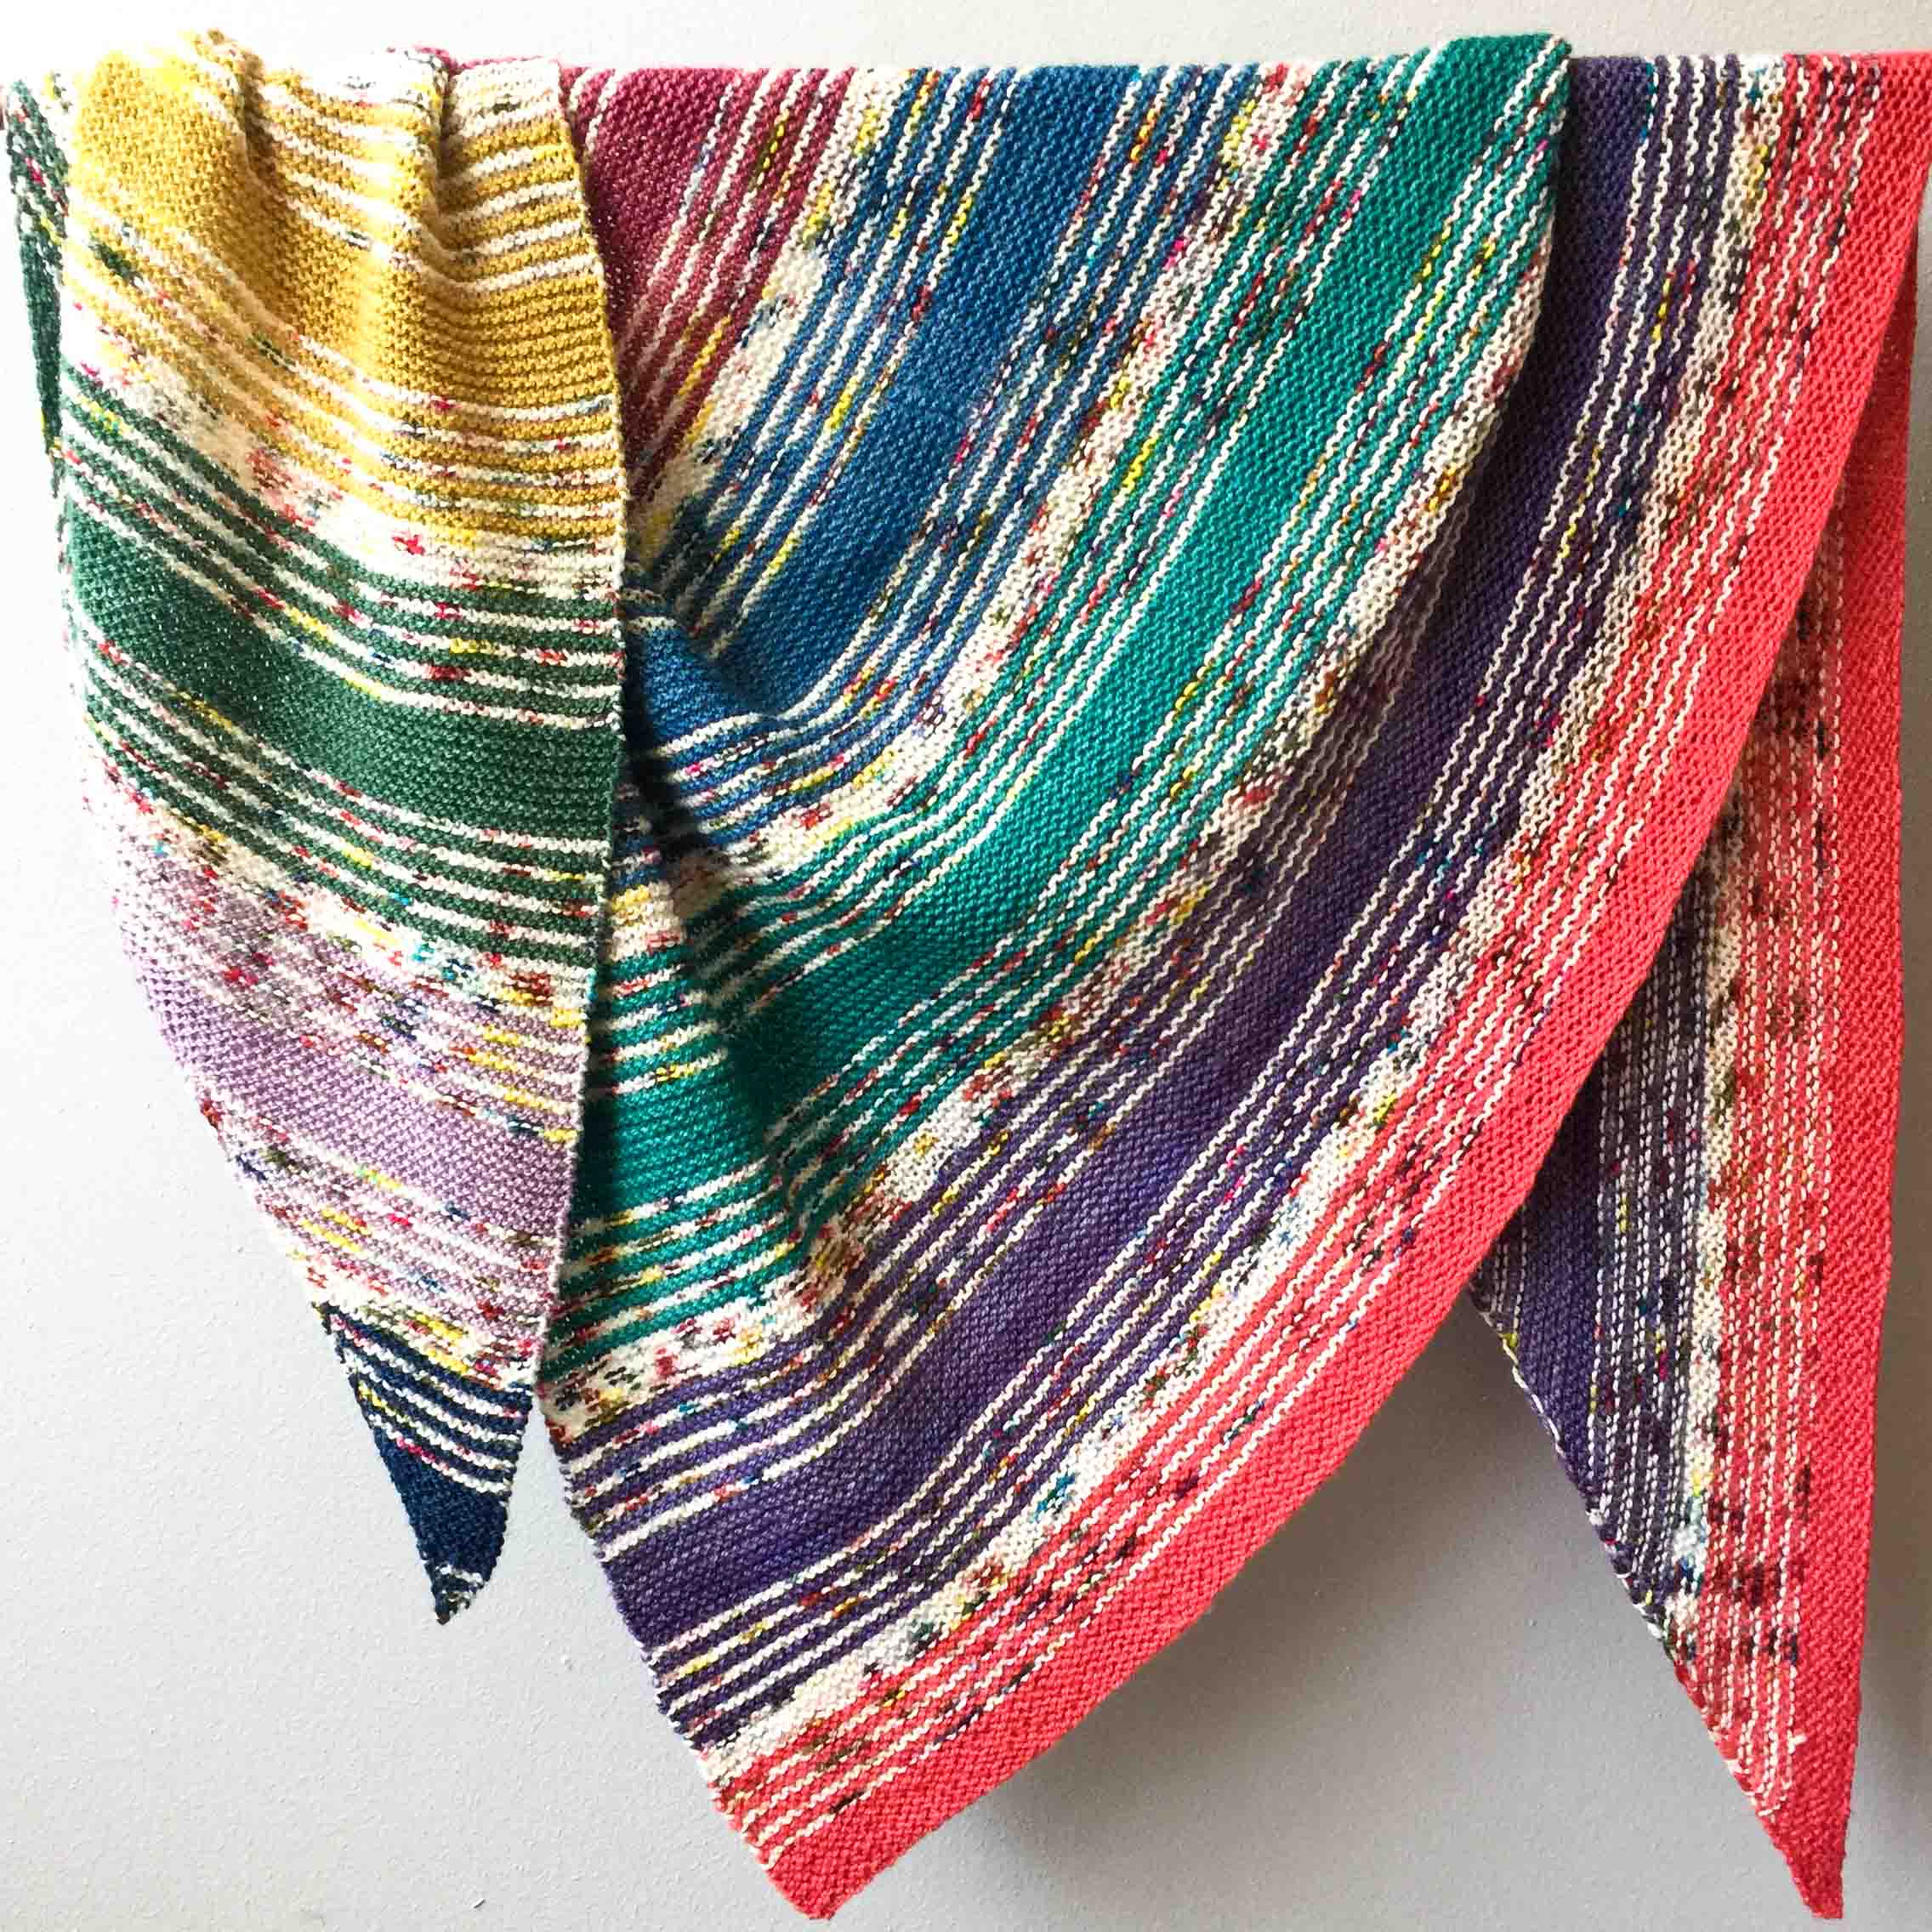 Rainbow striped hand knit triangle shawl in Cowgirlblues Merino Twist yarn